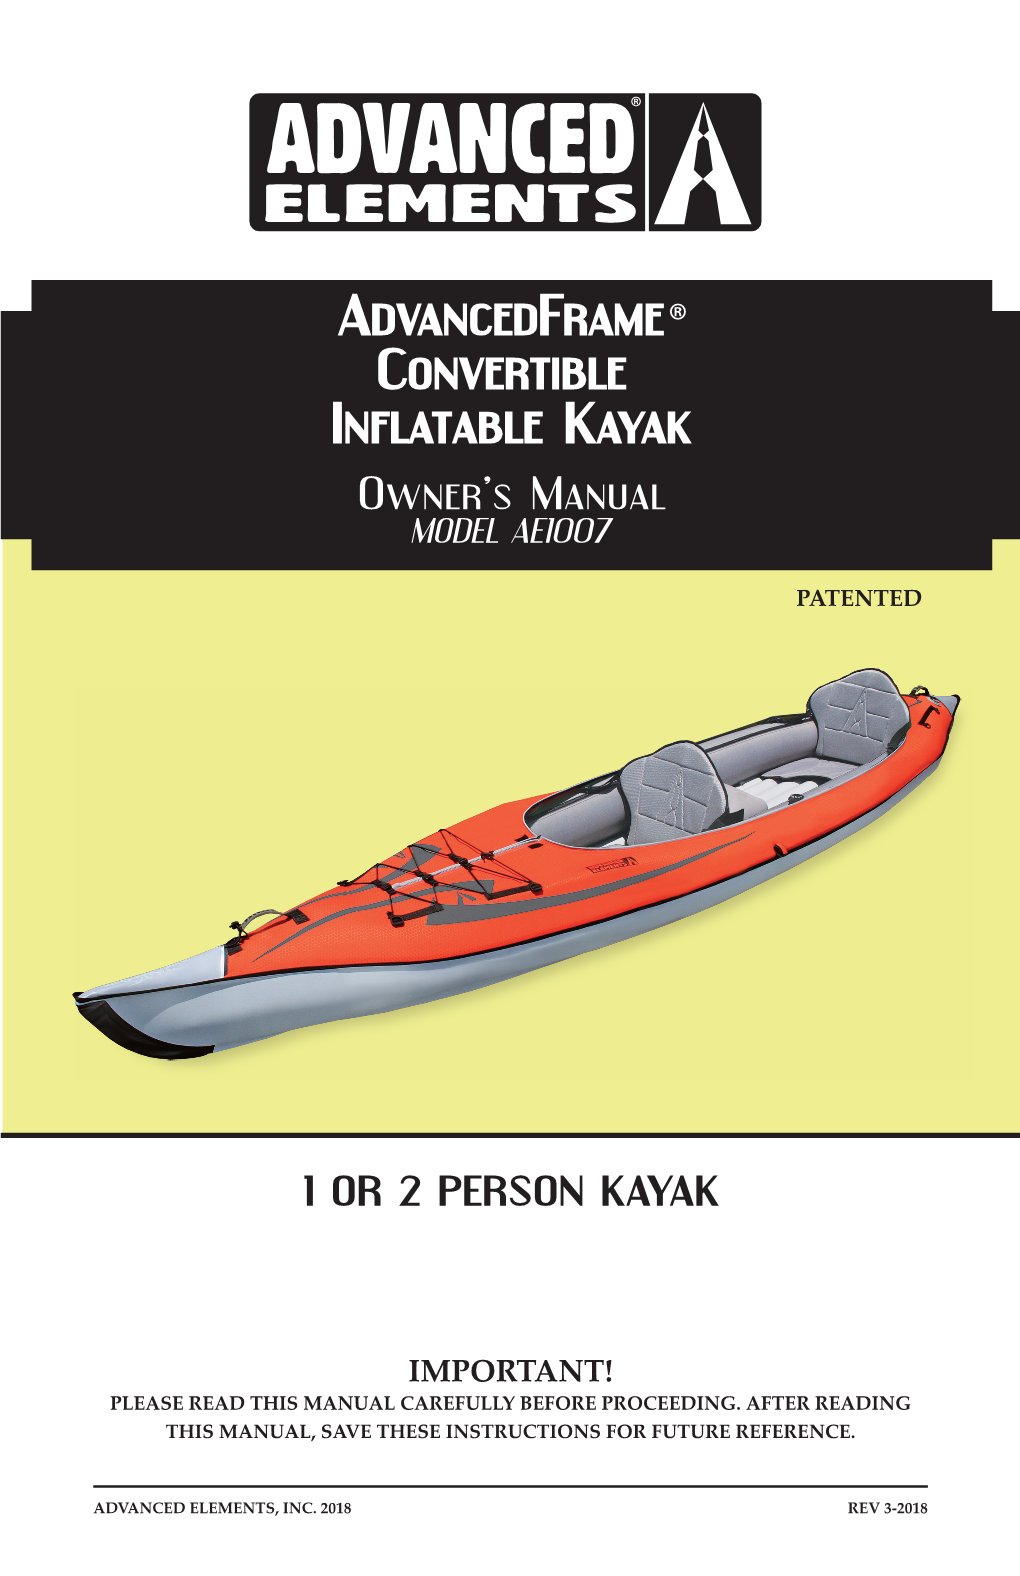 Advancedframe Convertible Inflatable Kayak Owner’S Manual MODEL AE1007